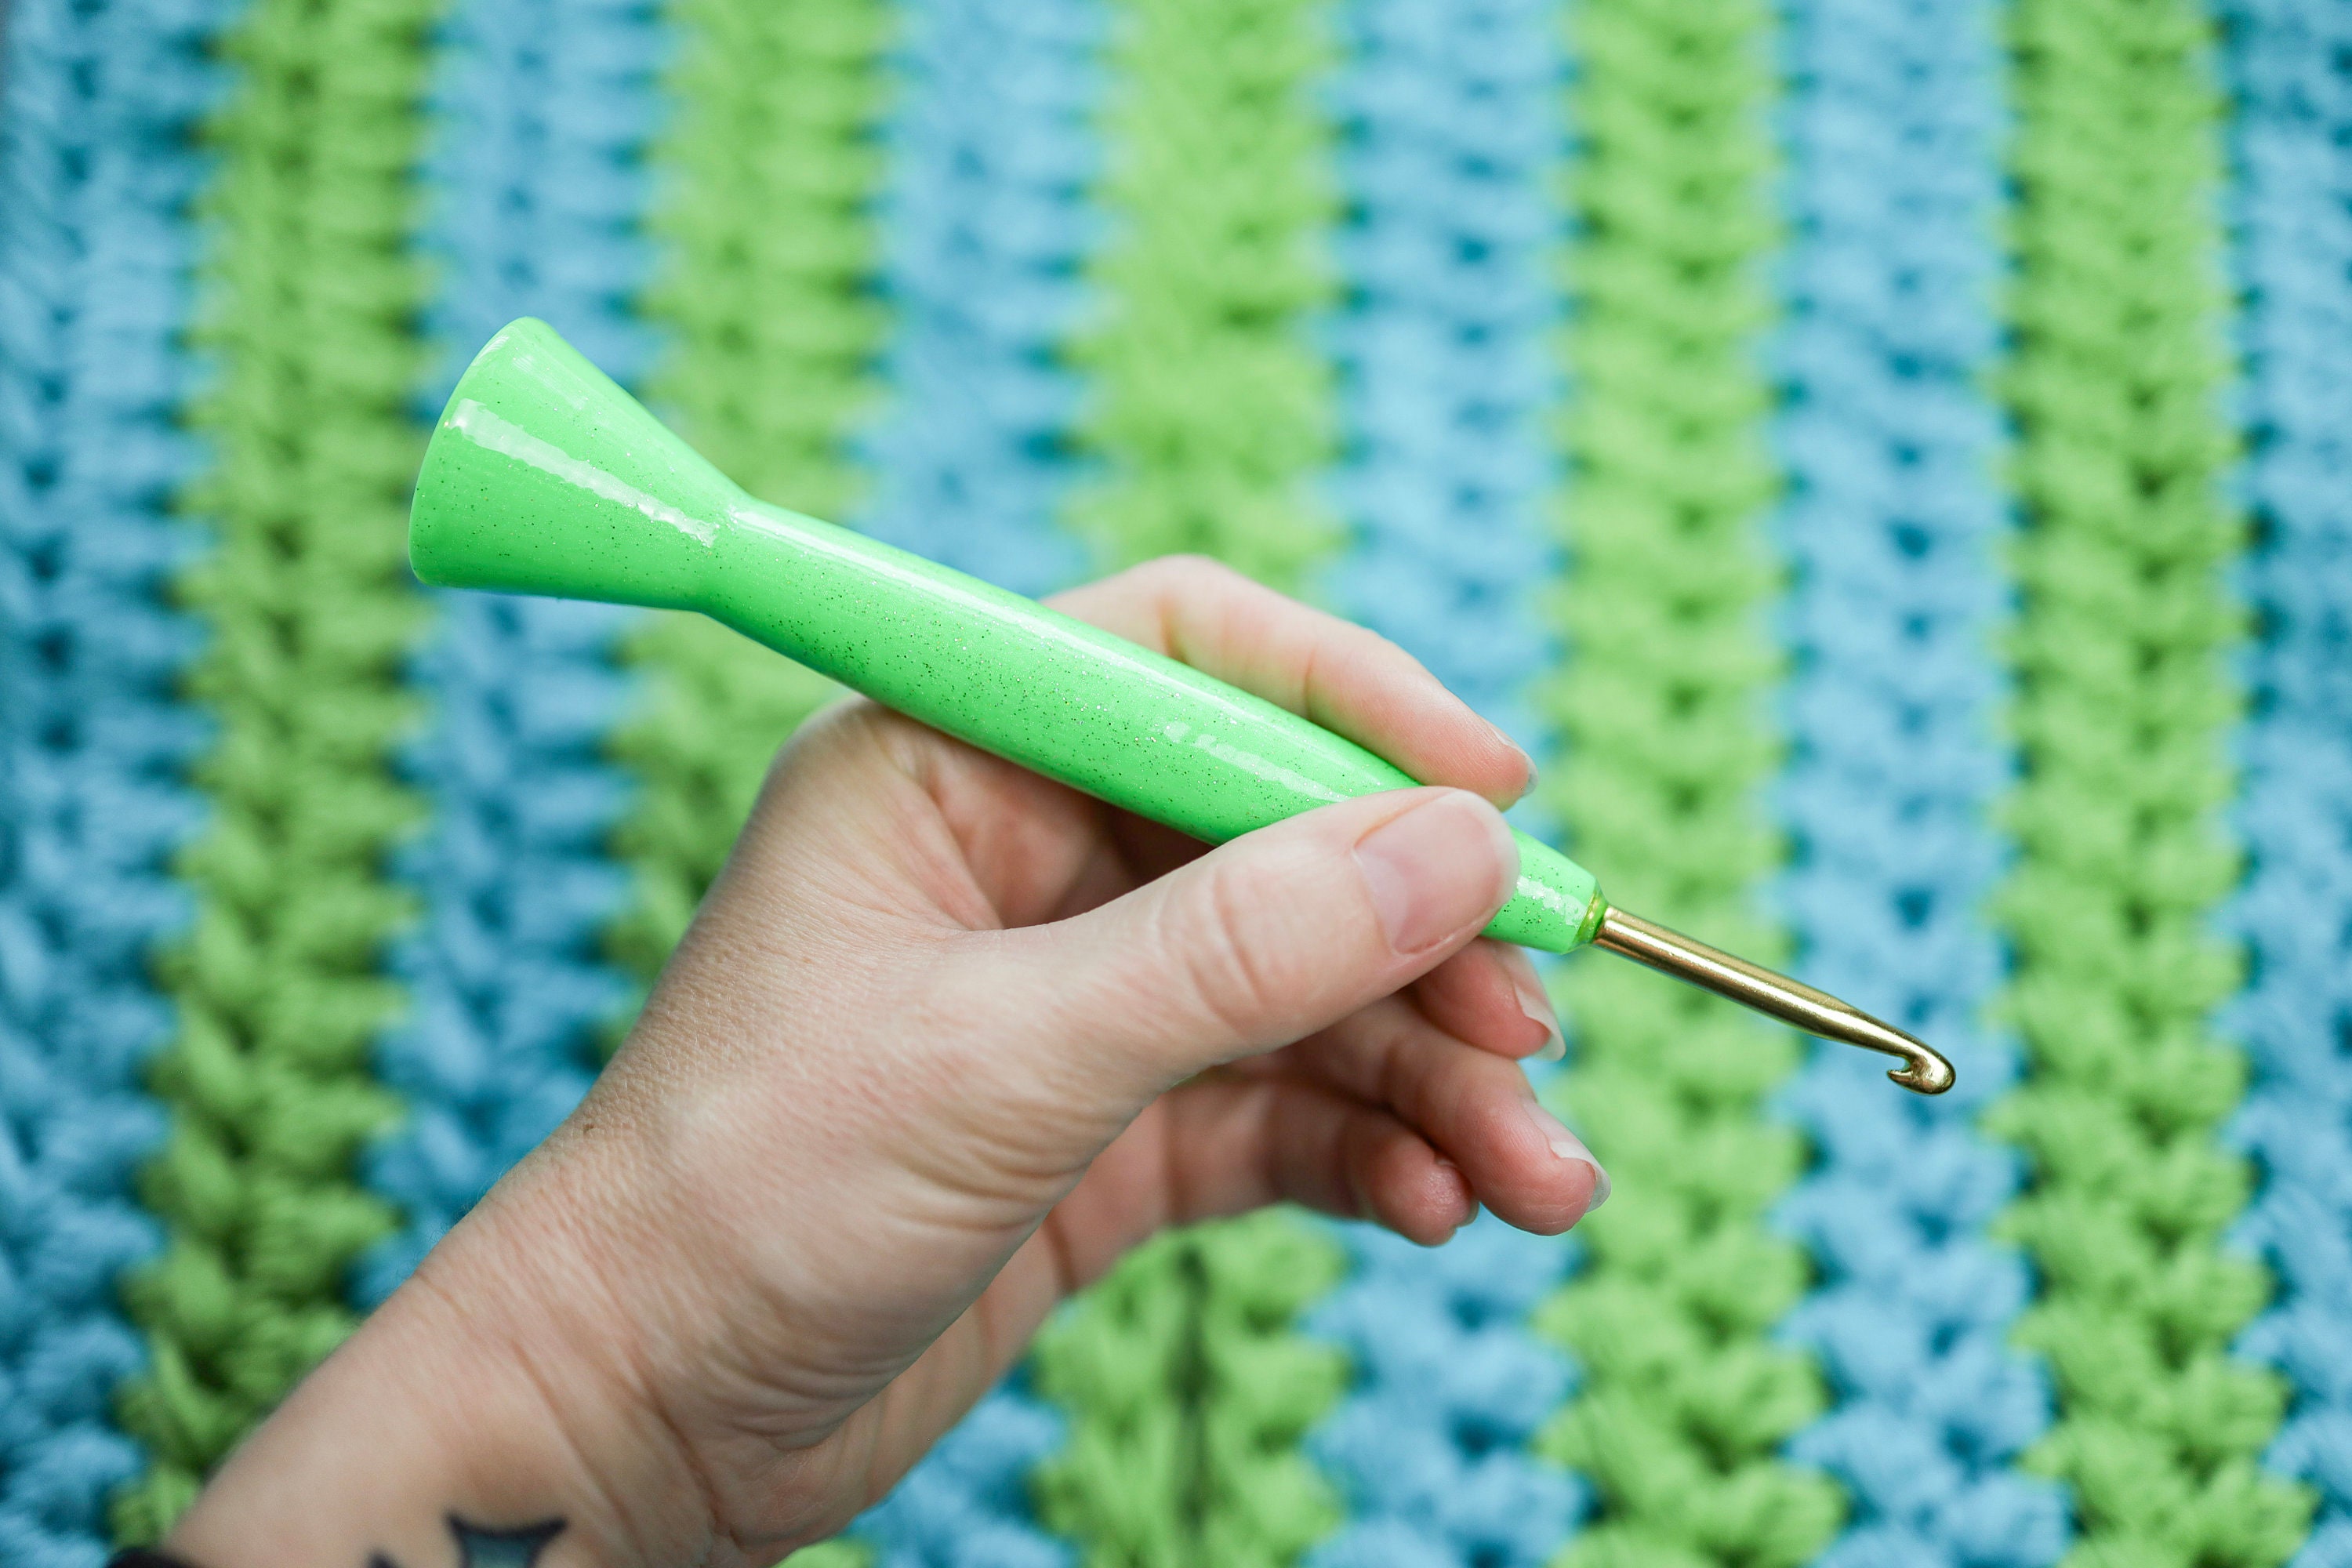 5mm Ergonomic Crochet Hook, 3D Printed Hybrid Tapered Style Boye Metal  Crochet Hook, Neon Green Glitter Edition, Gift for Crocheter -   Australia